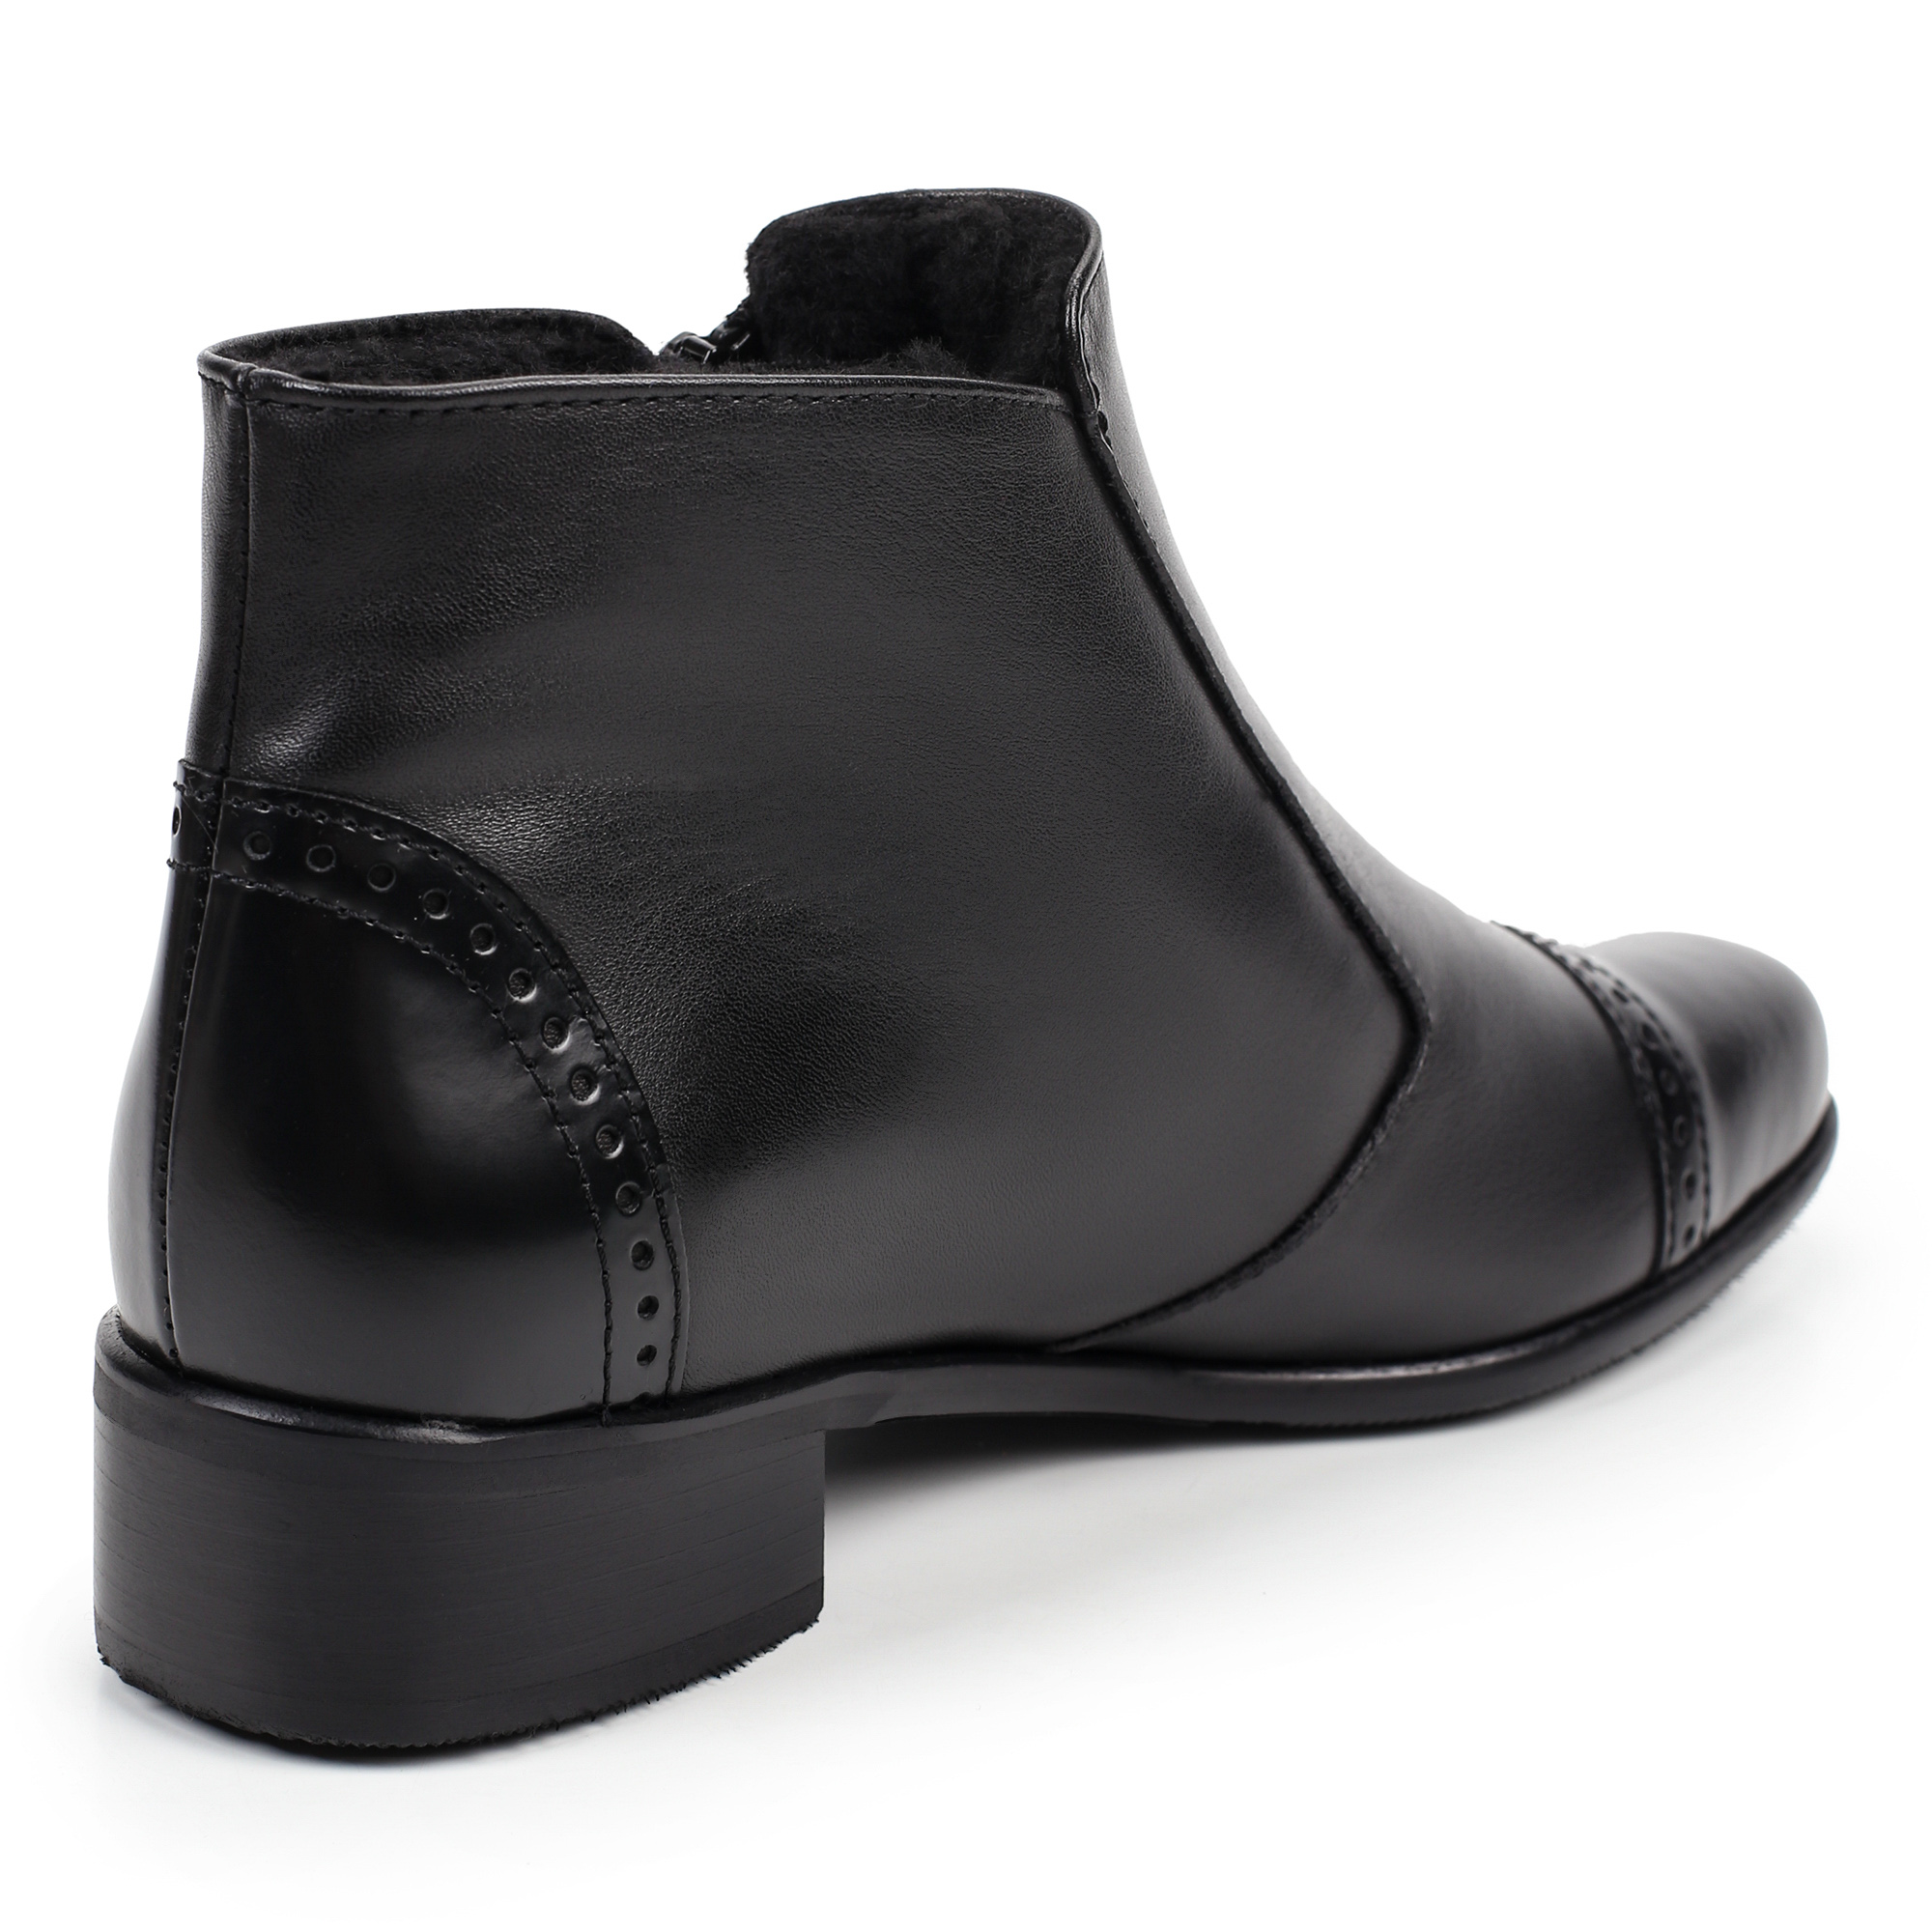 Ботинки Semler C39386-203-001, цвет черный, размер 37 - фото 3